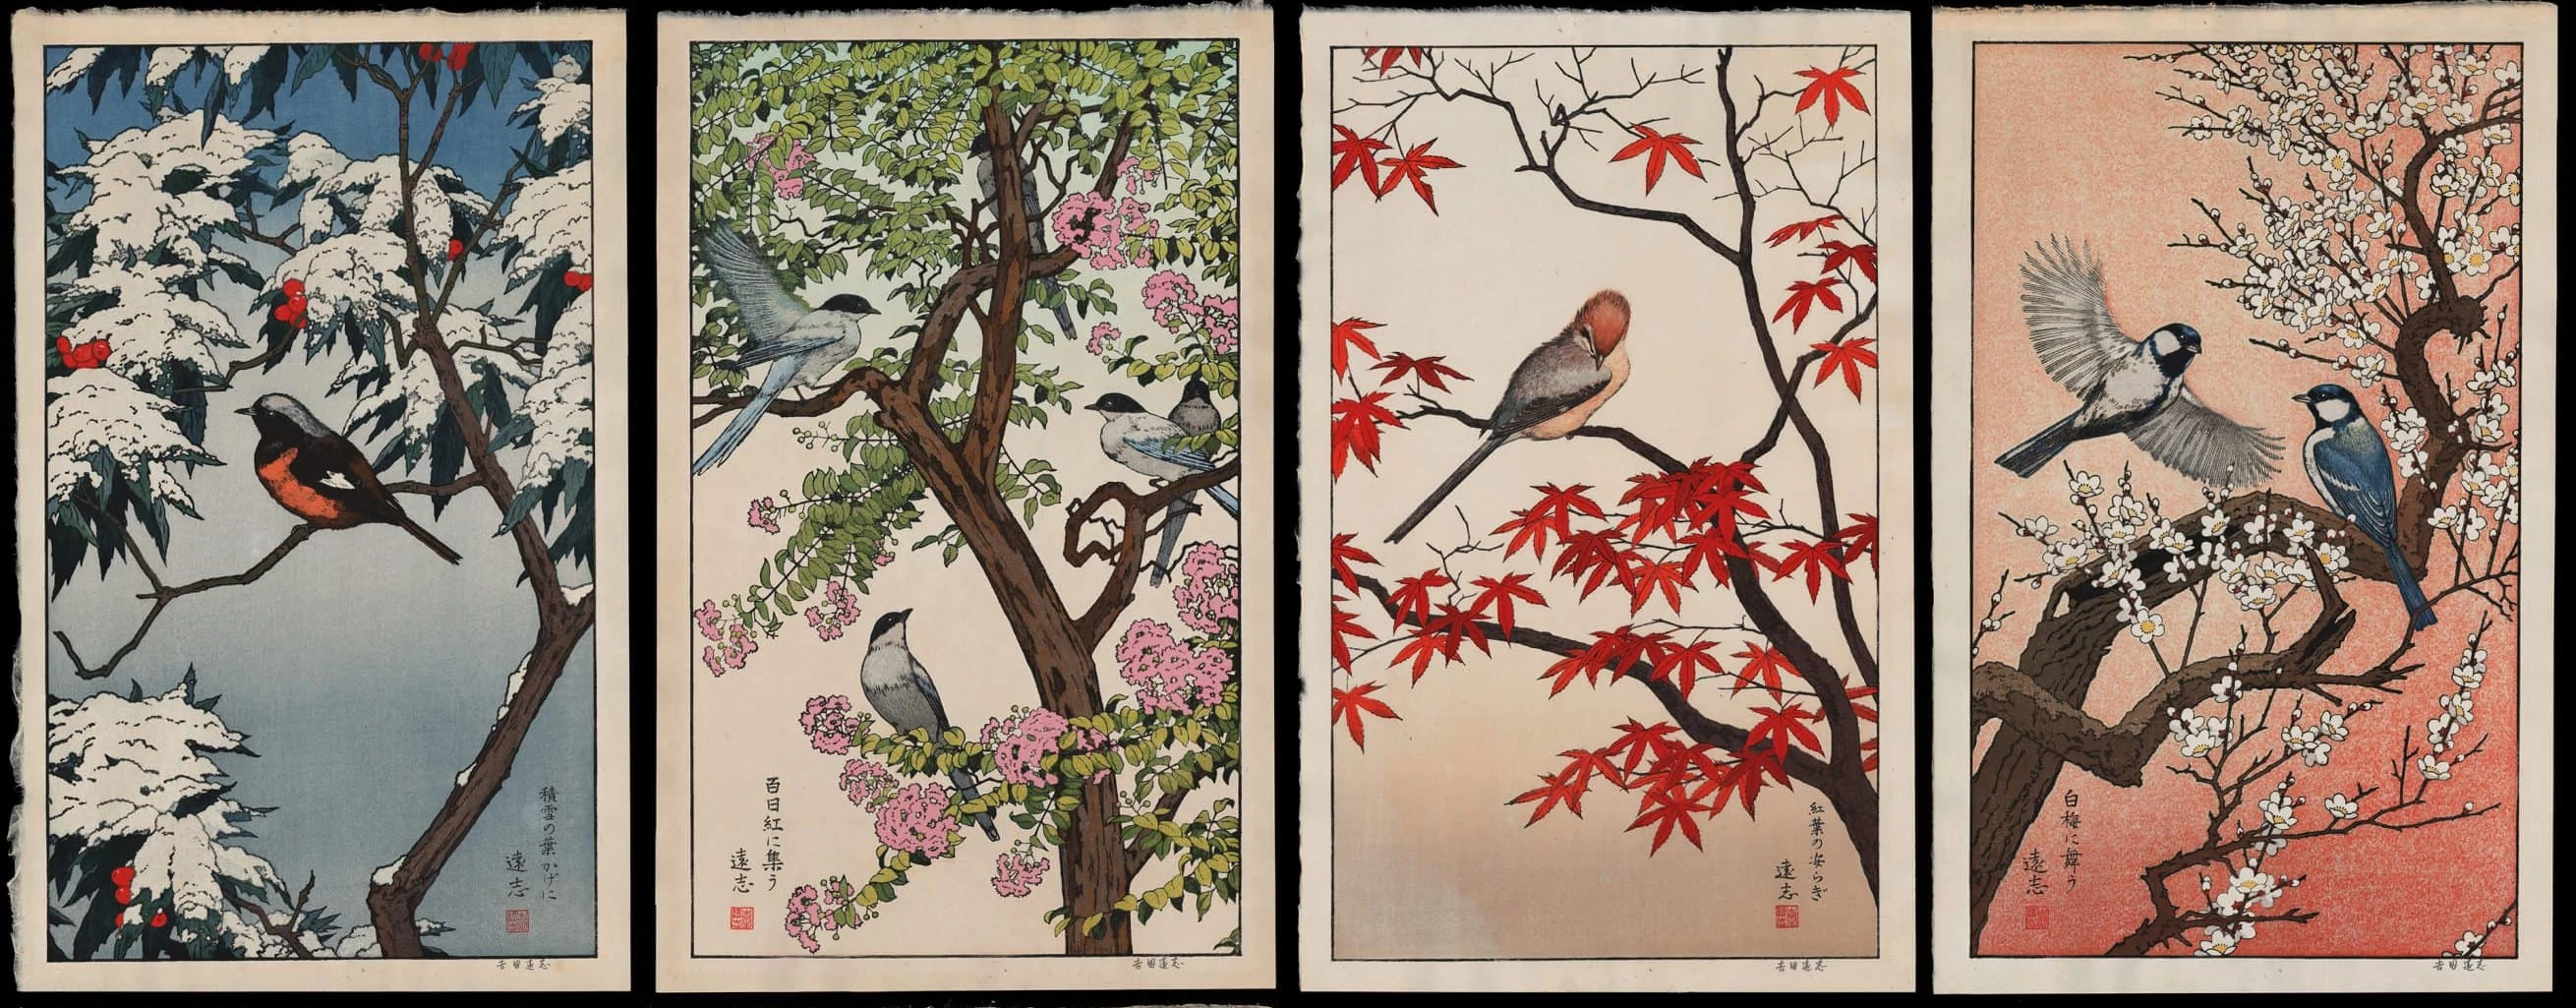 ../../../_images/toshi-yoshida-birds-of-the-seasons-set-of-four-horizontal.webp